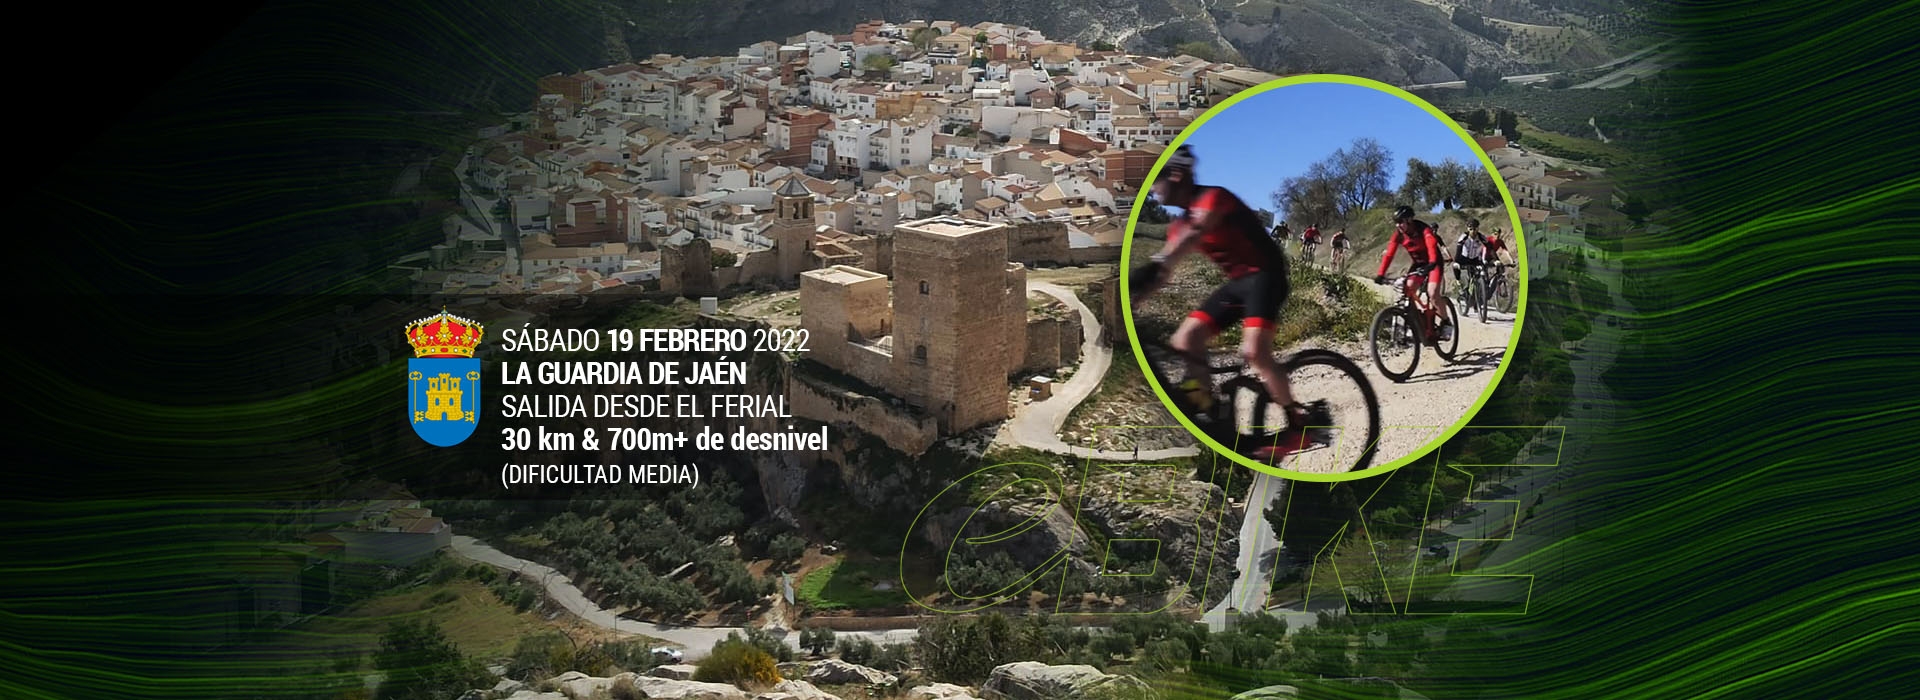 Andalucía eBike Ride en La Guardia de Jaén